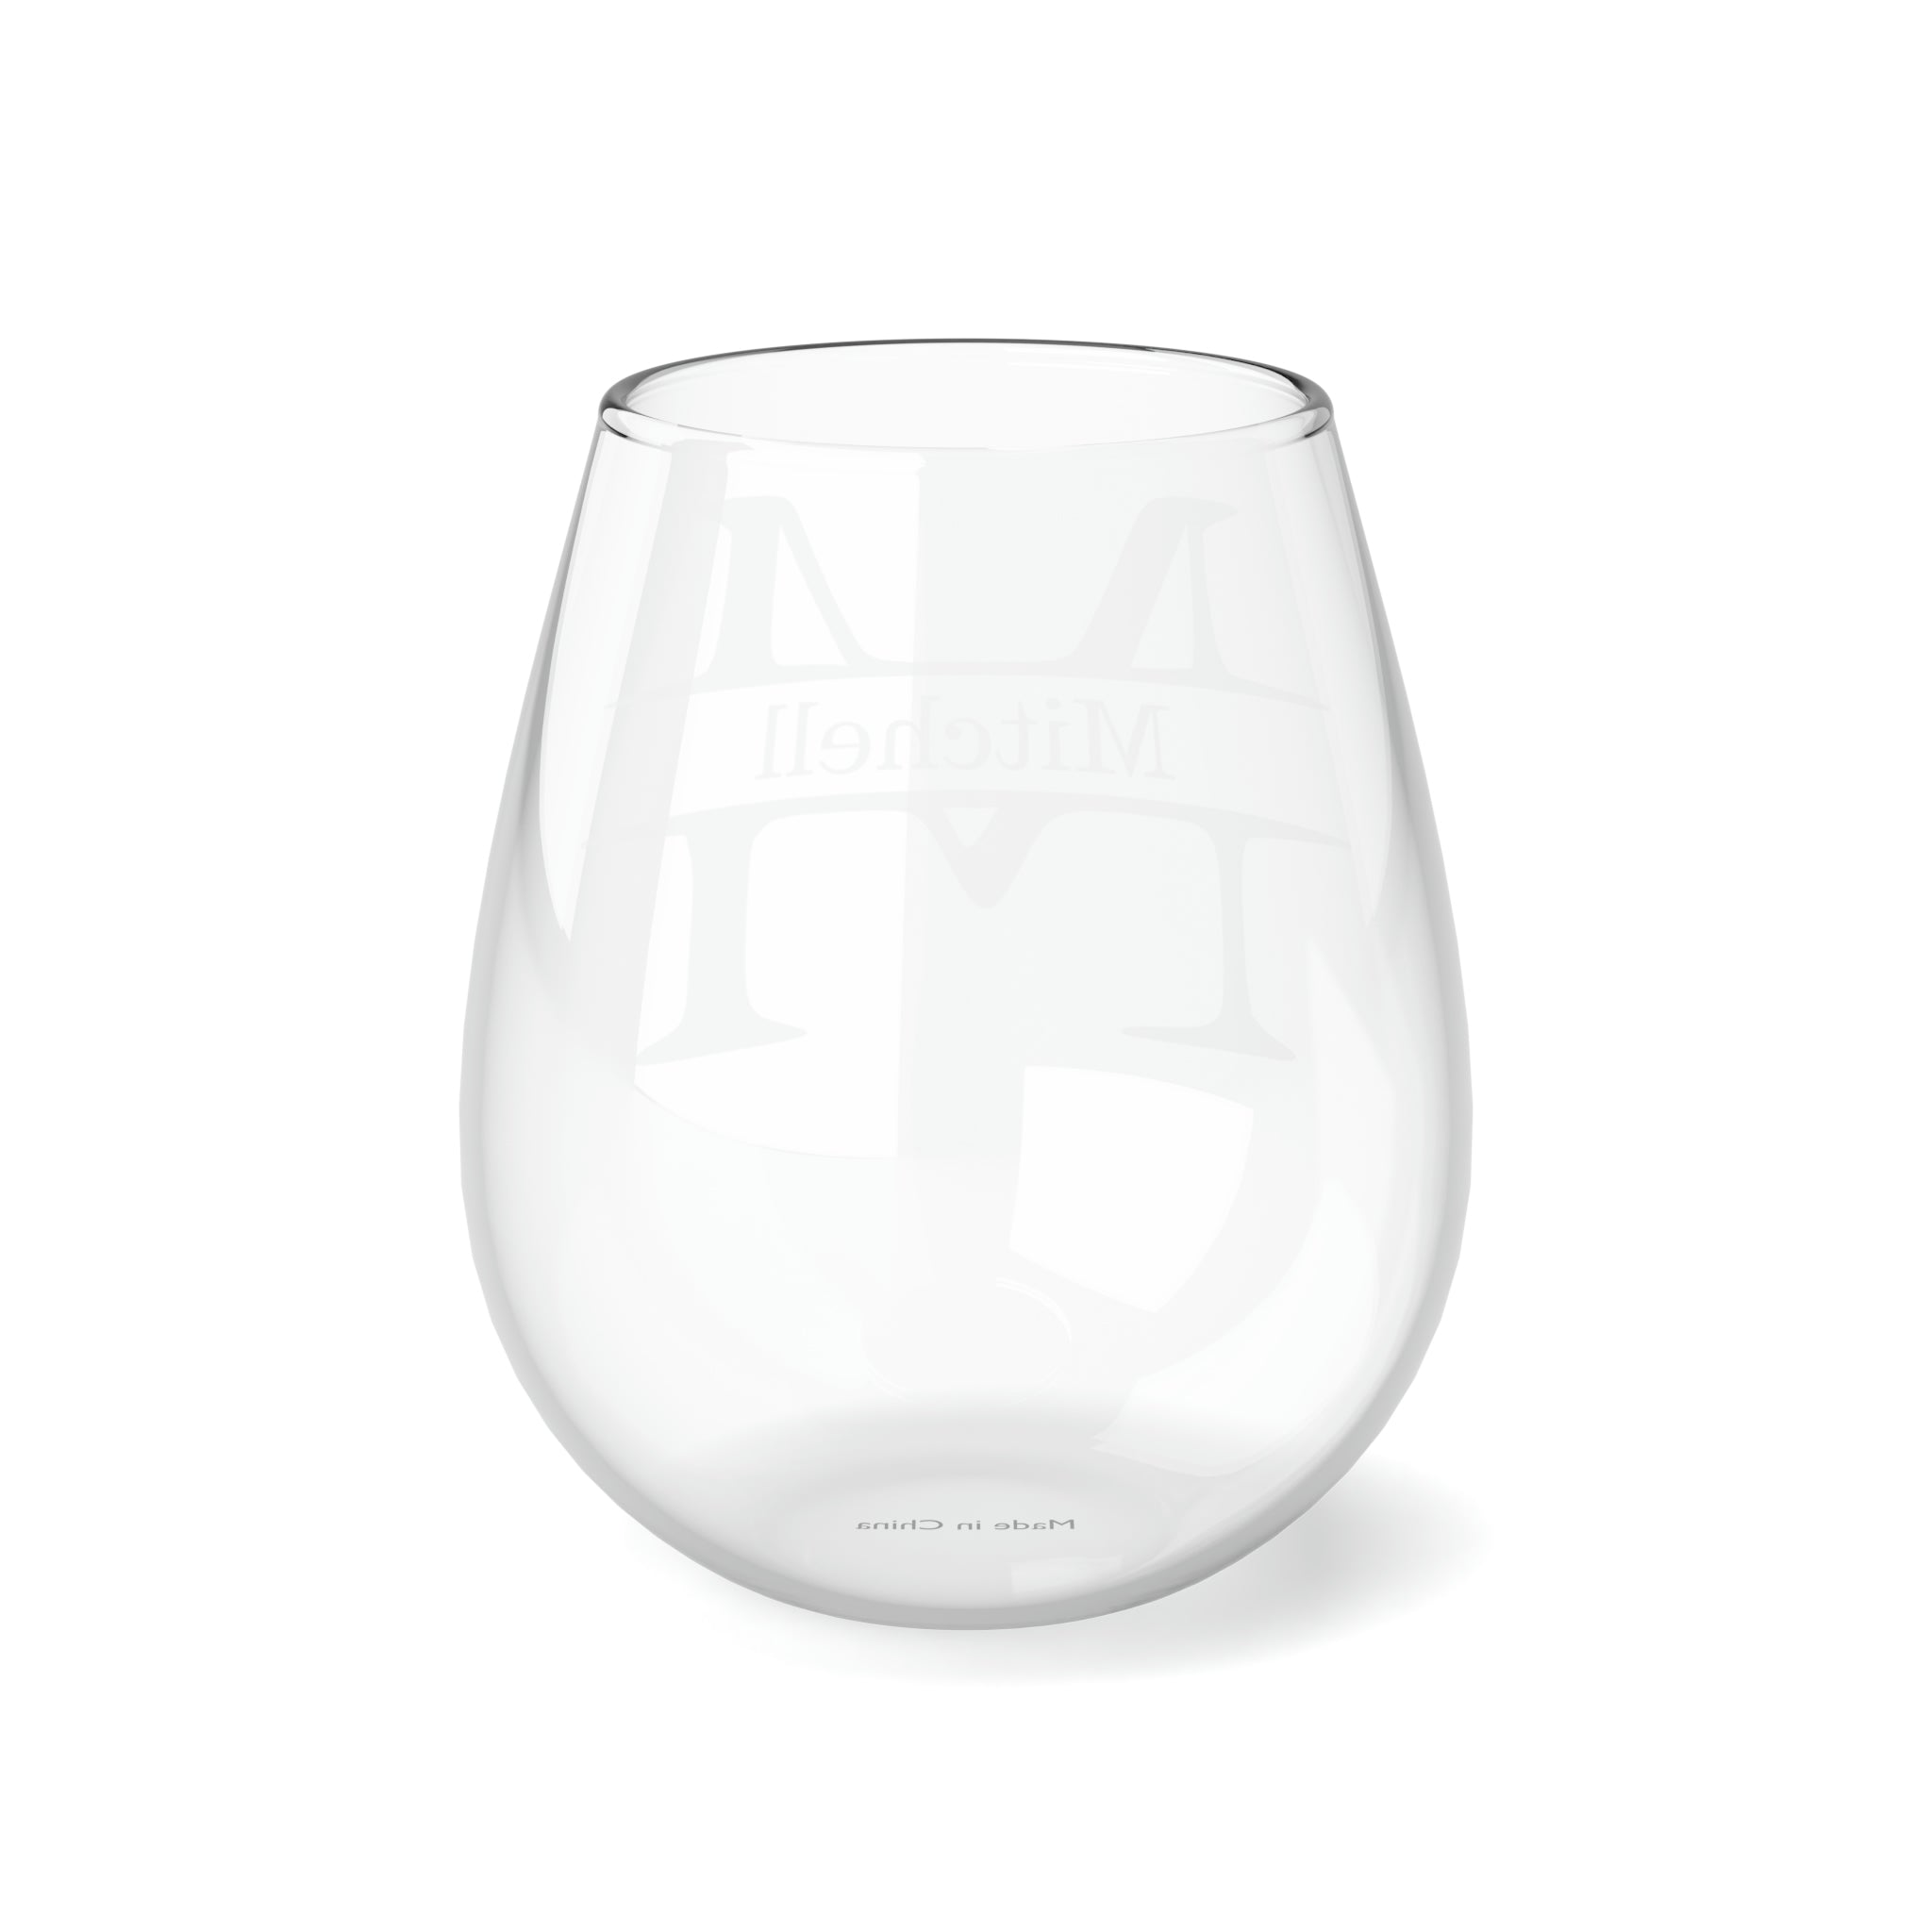 Merlot, Personalized - Stemless Wine Glass, 11.75oz